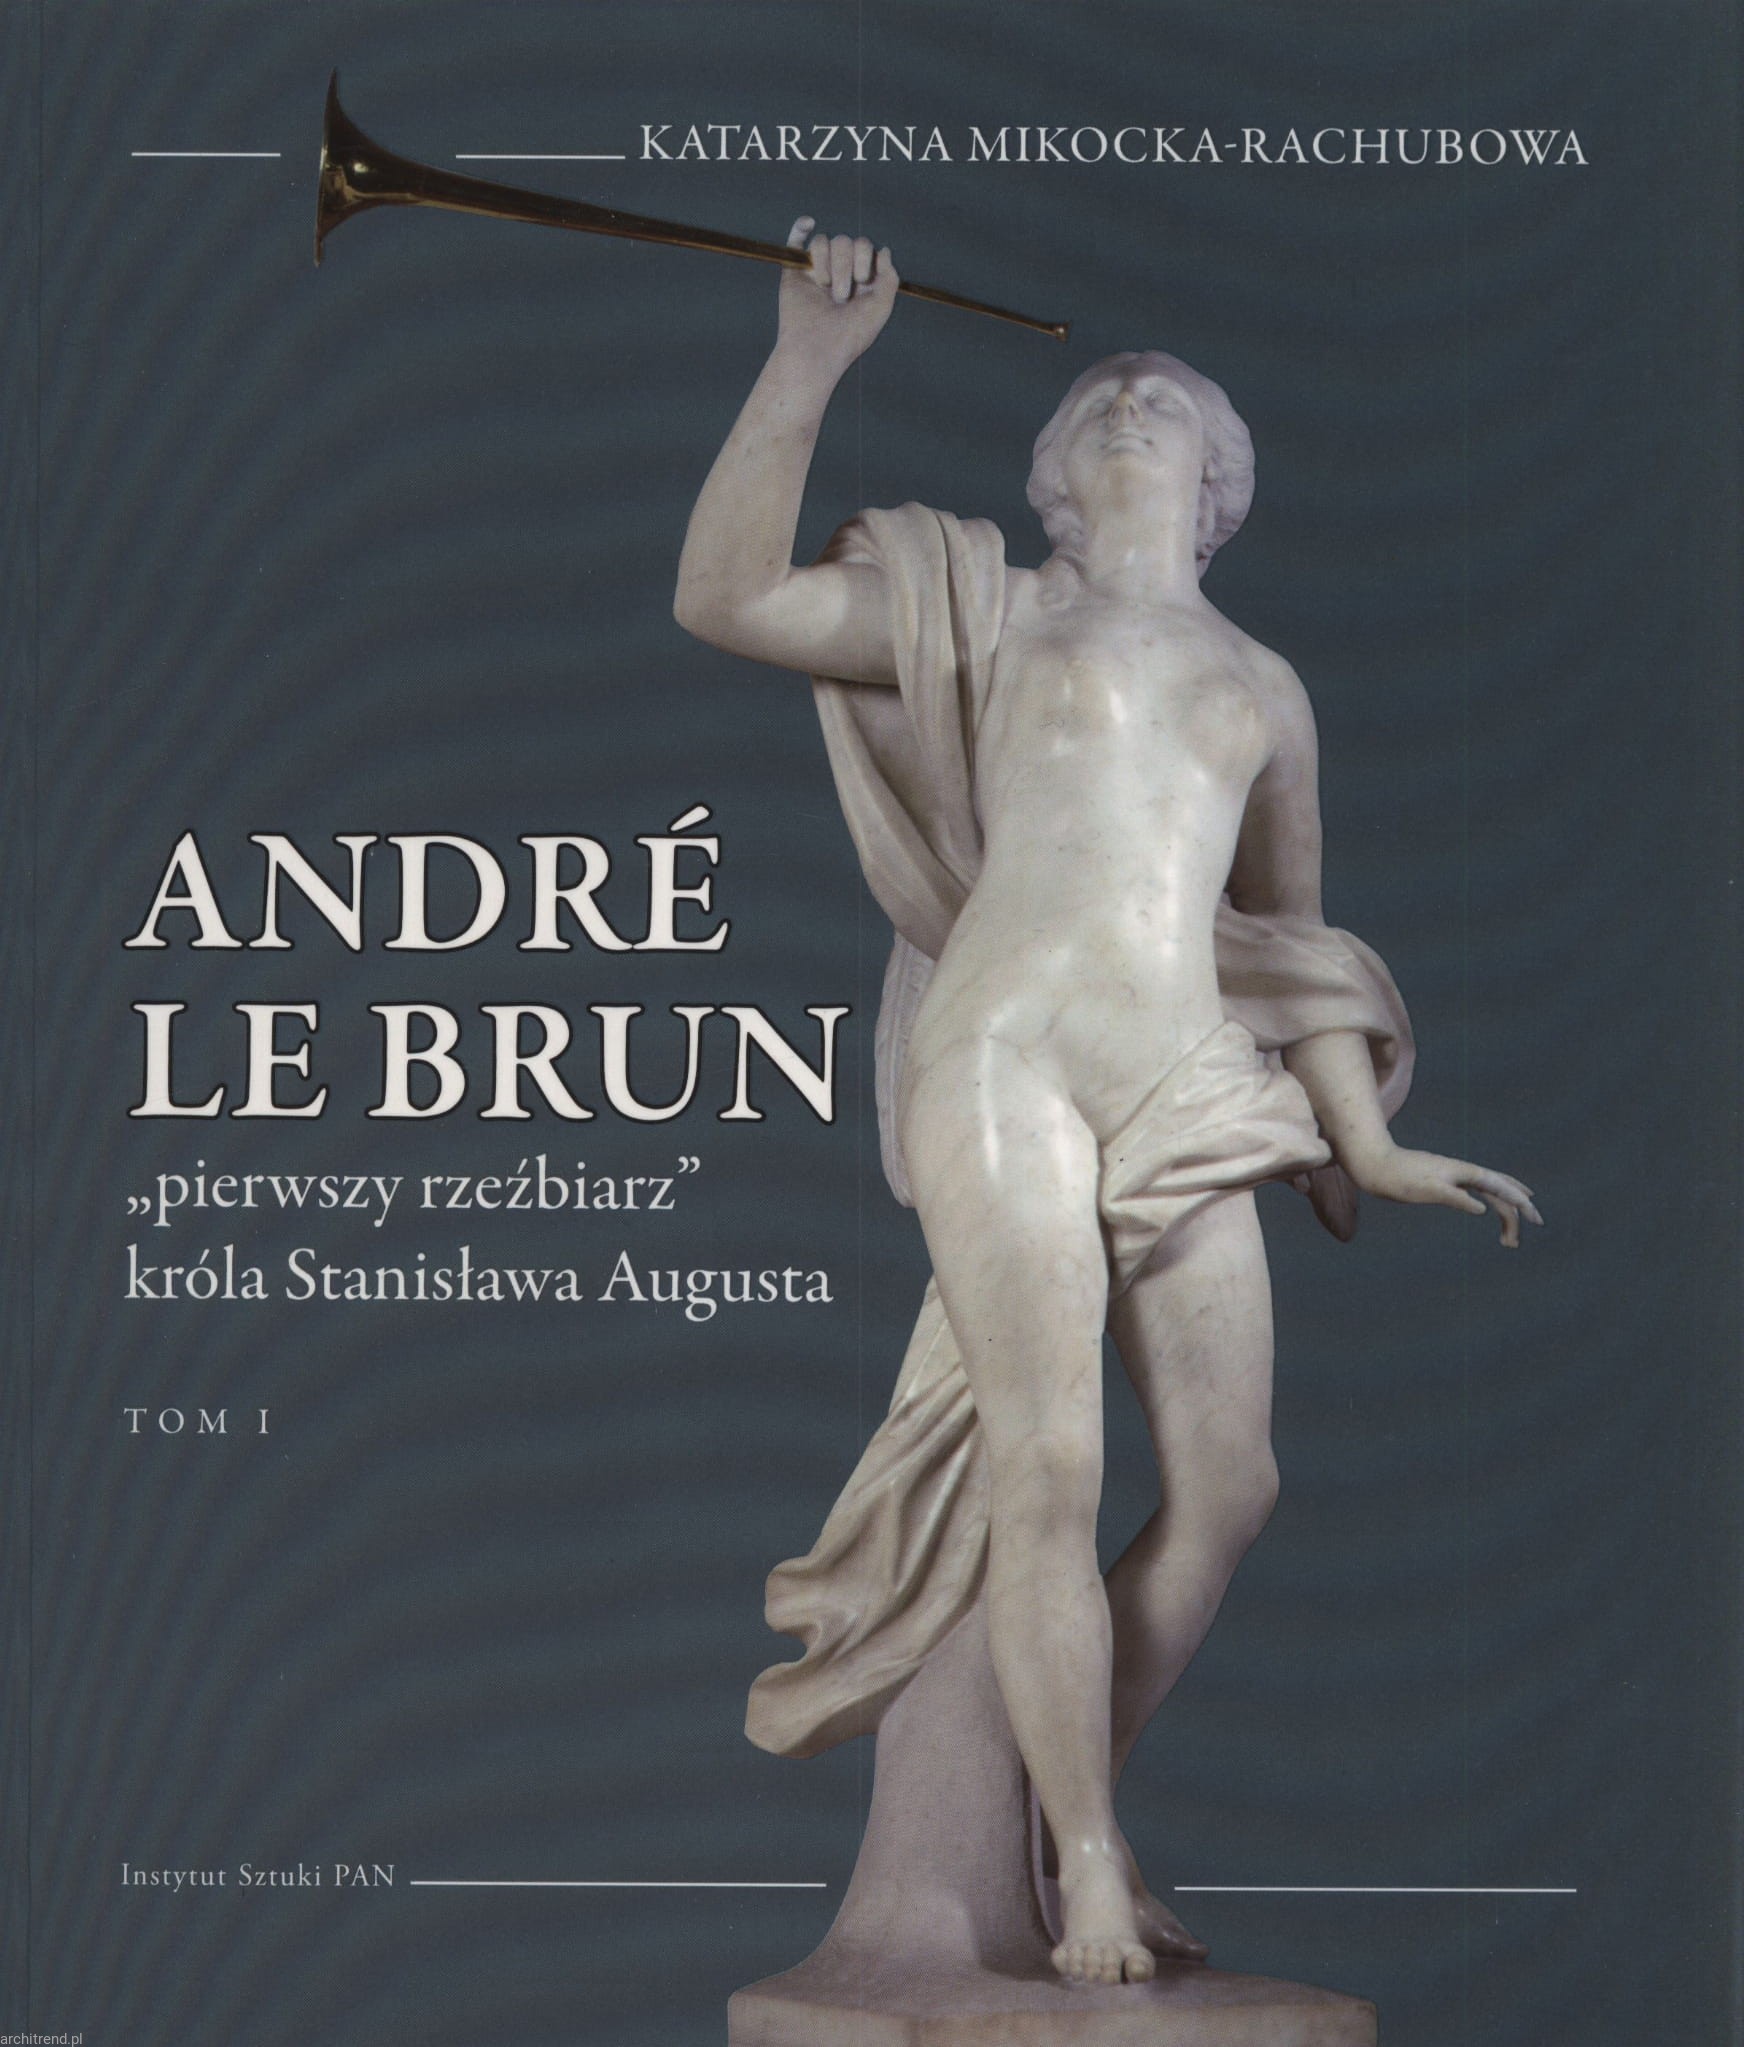 Andre Le Brun "Pierwszy rzeźbiarz" króla Stanisława Augusta T.1/2 (K.Mikocka-Rachubowa)